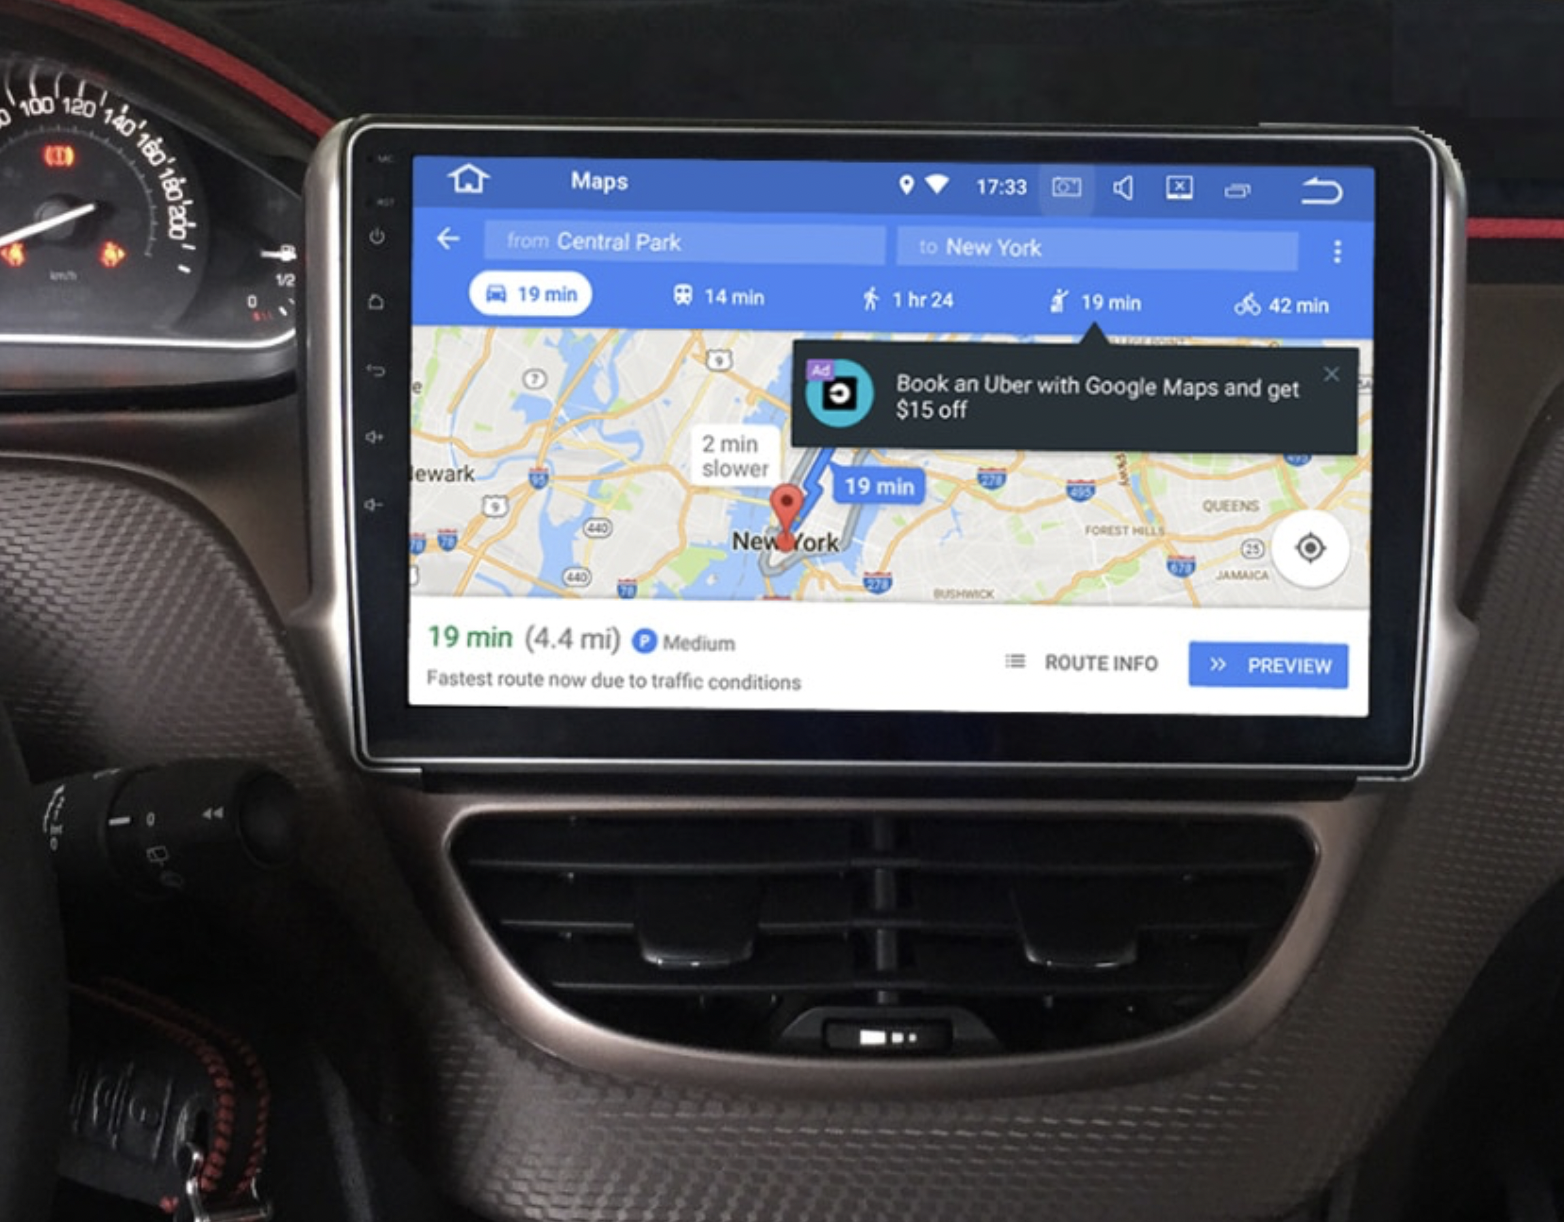 Ecran tactile QLED GPS Carplay et Android 13.0 Peugeot 208 et 2008